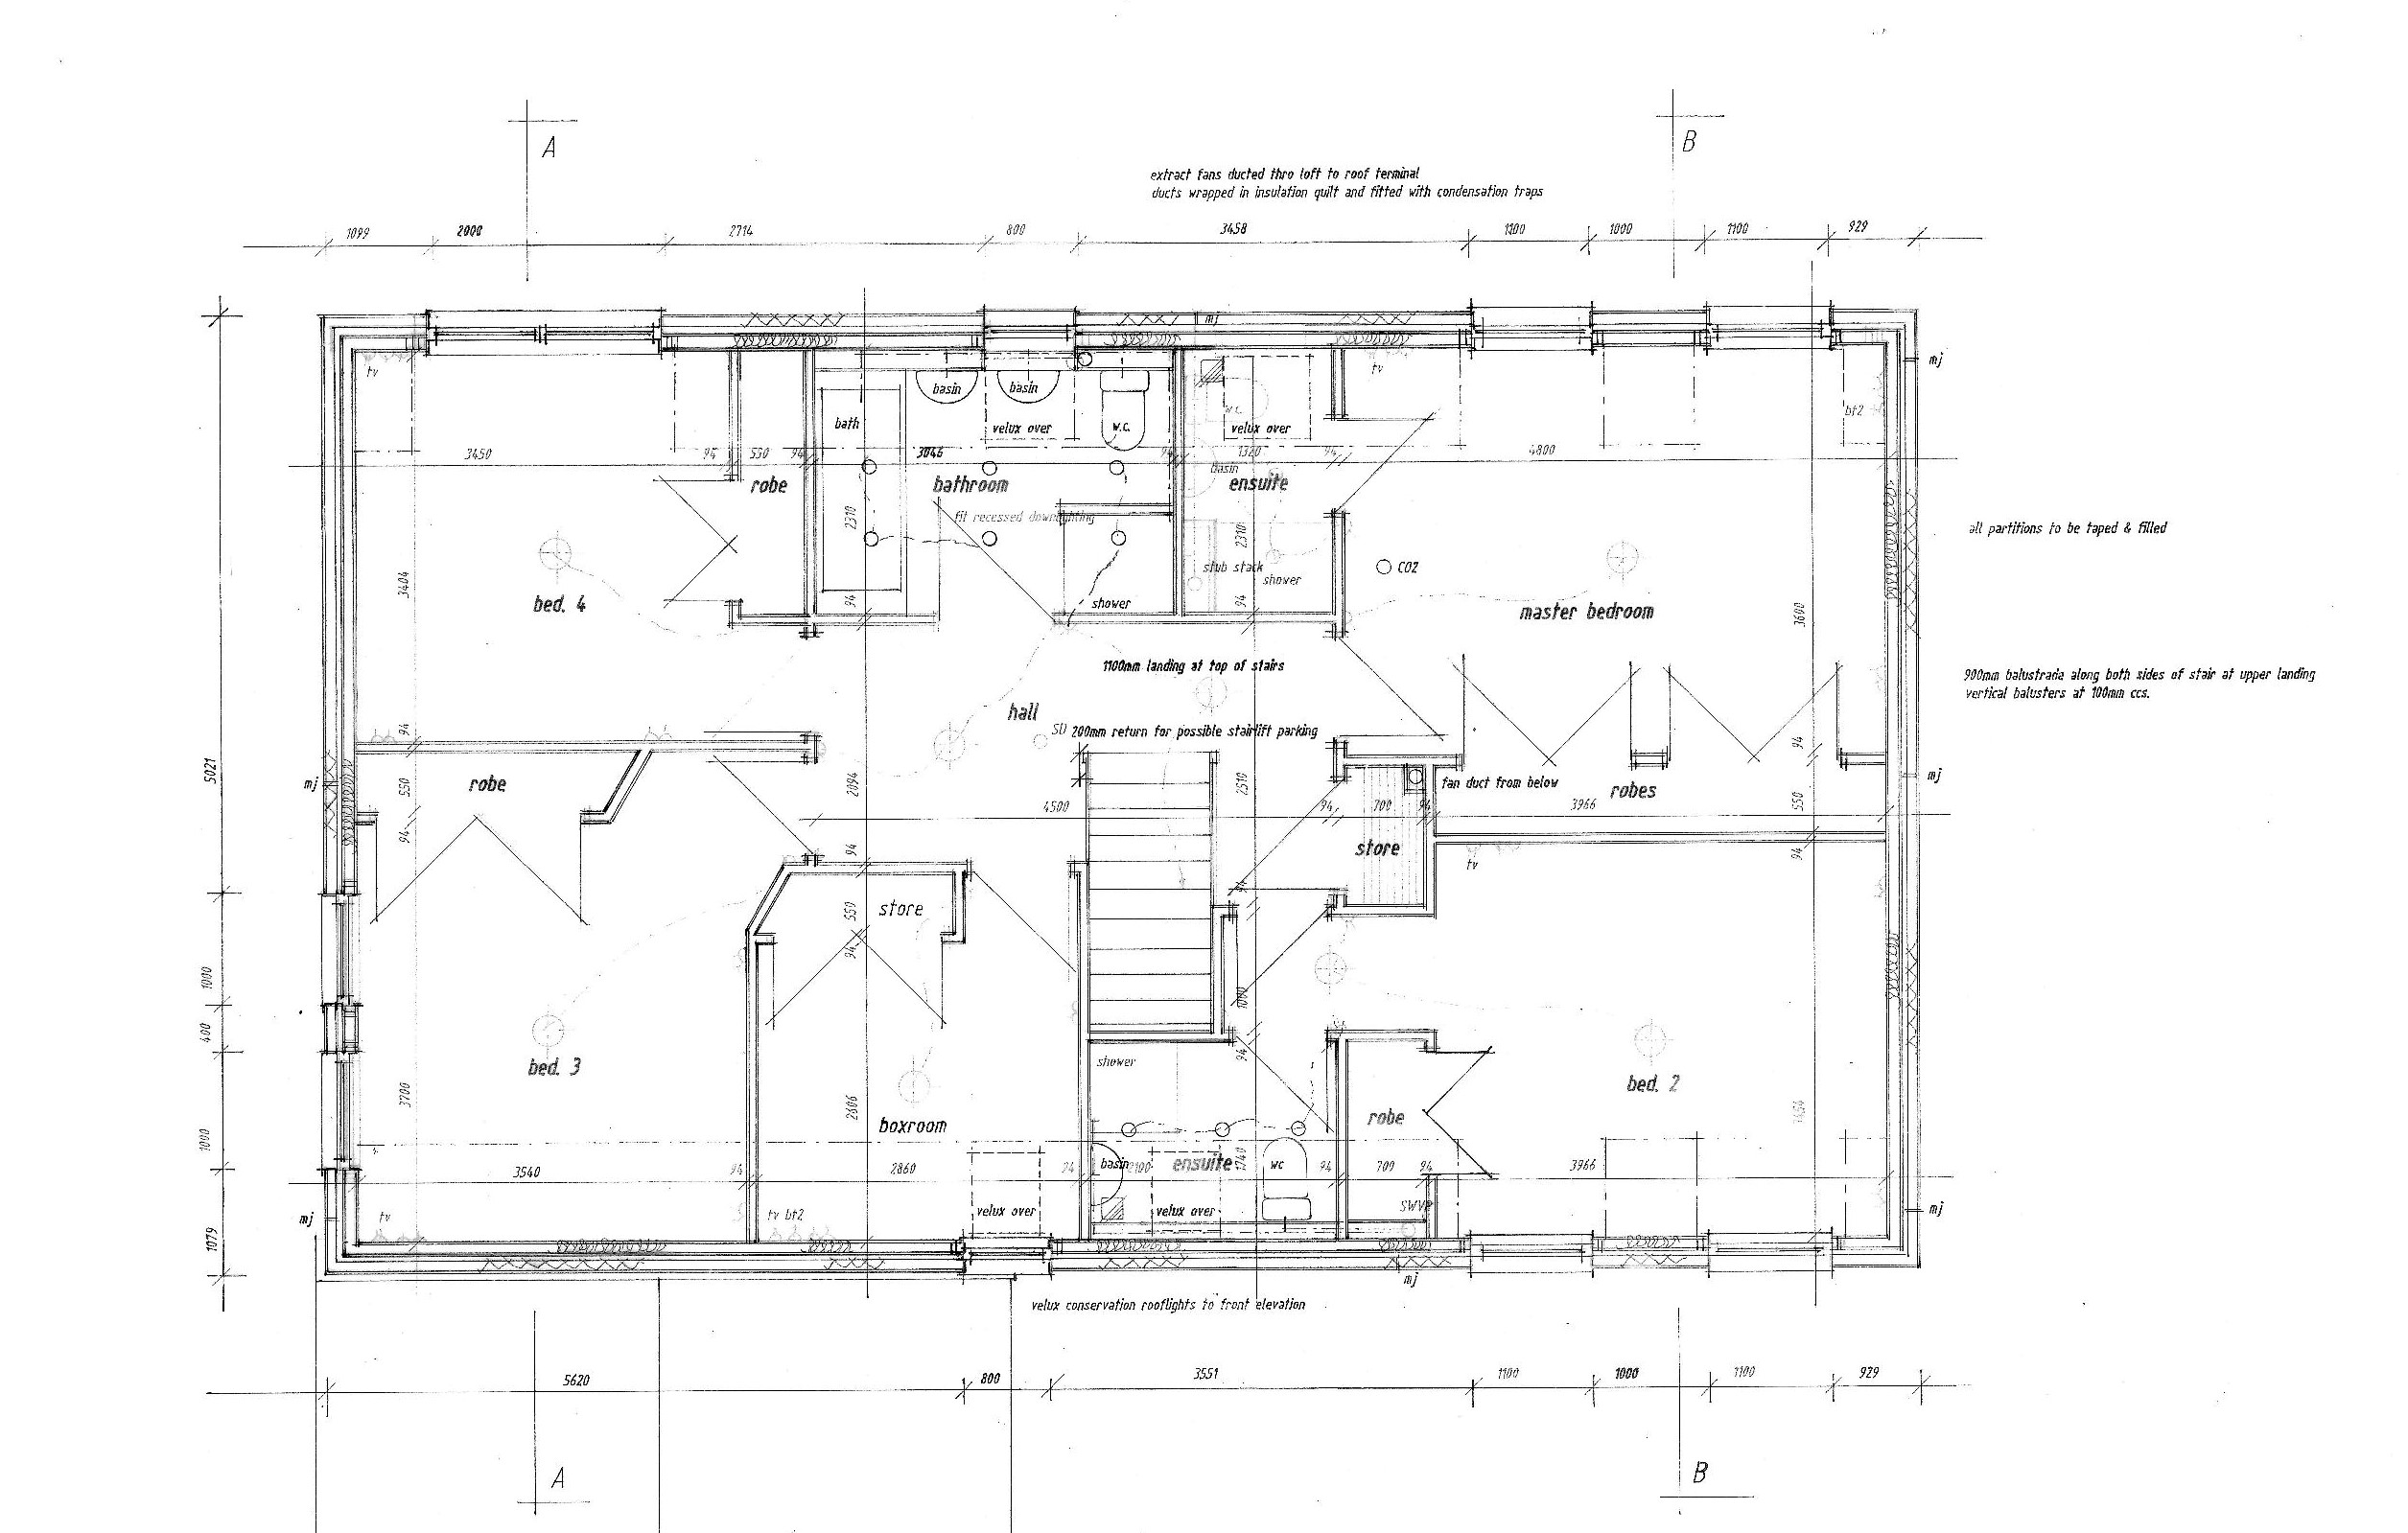 Upper Floor Plan